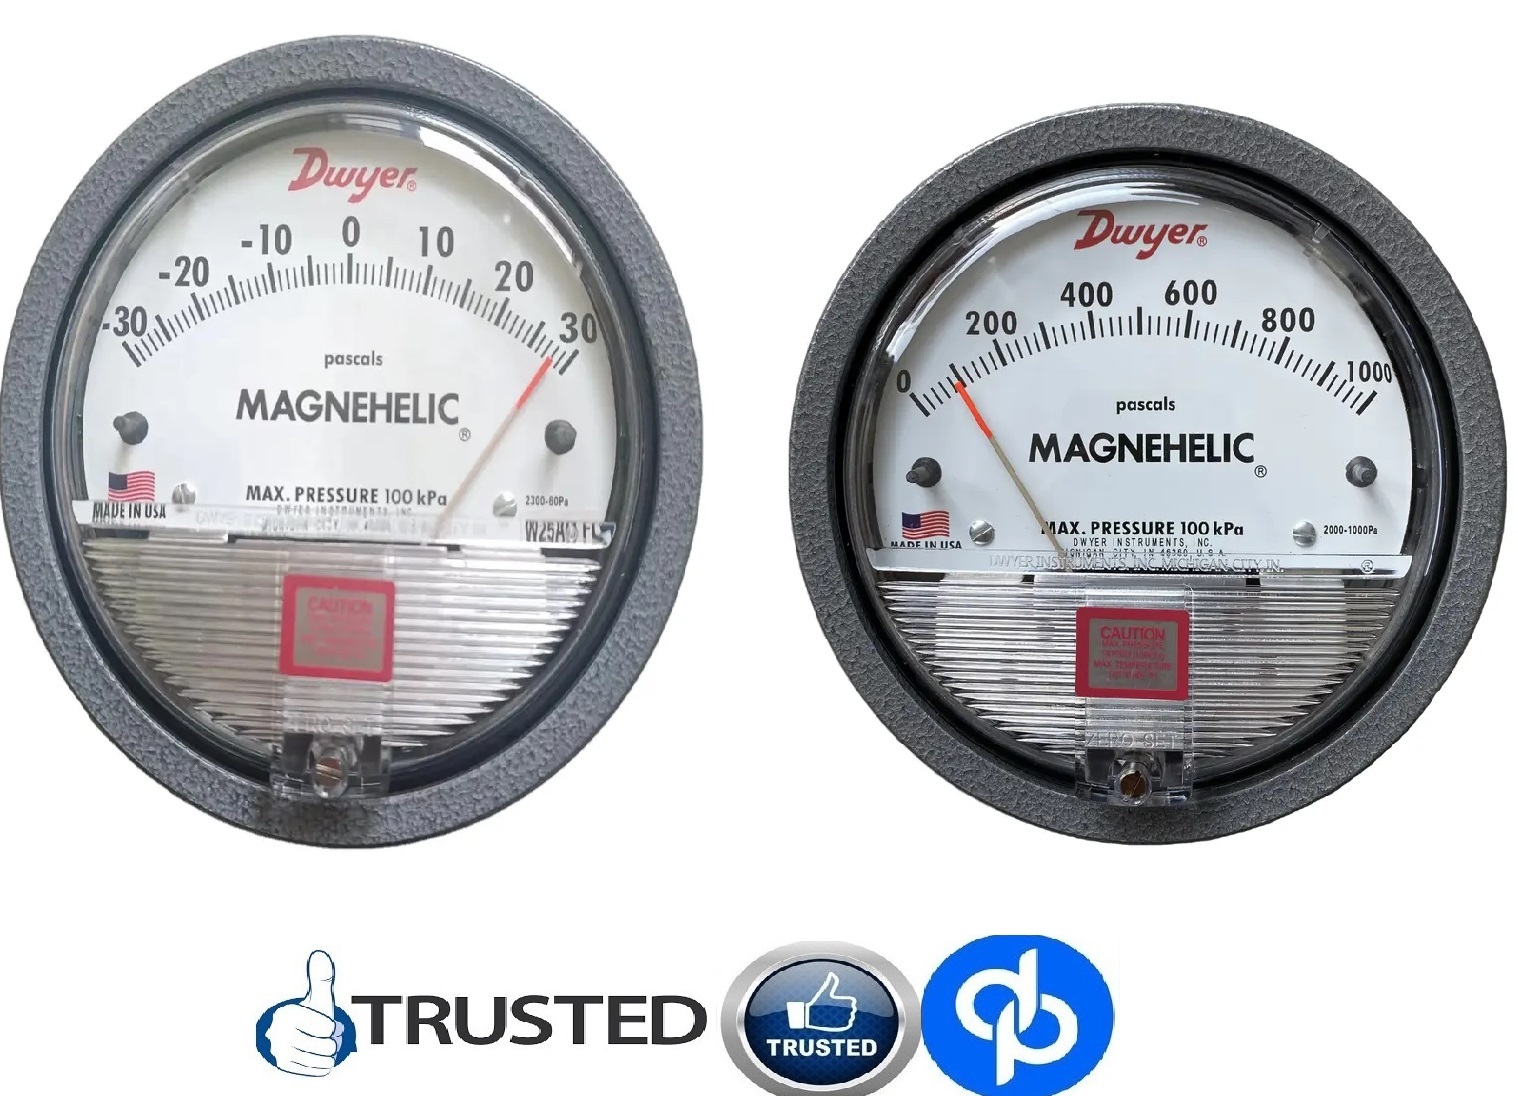 Dwyer Maghnehic gauges by Bagalkot Karnataka